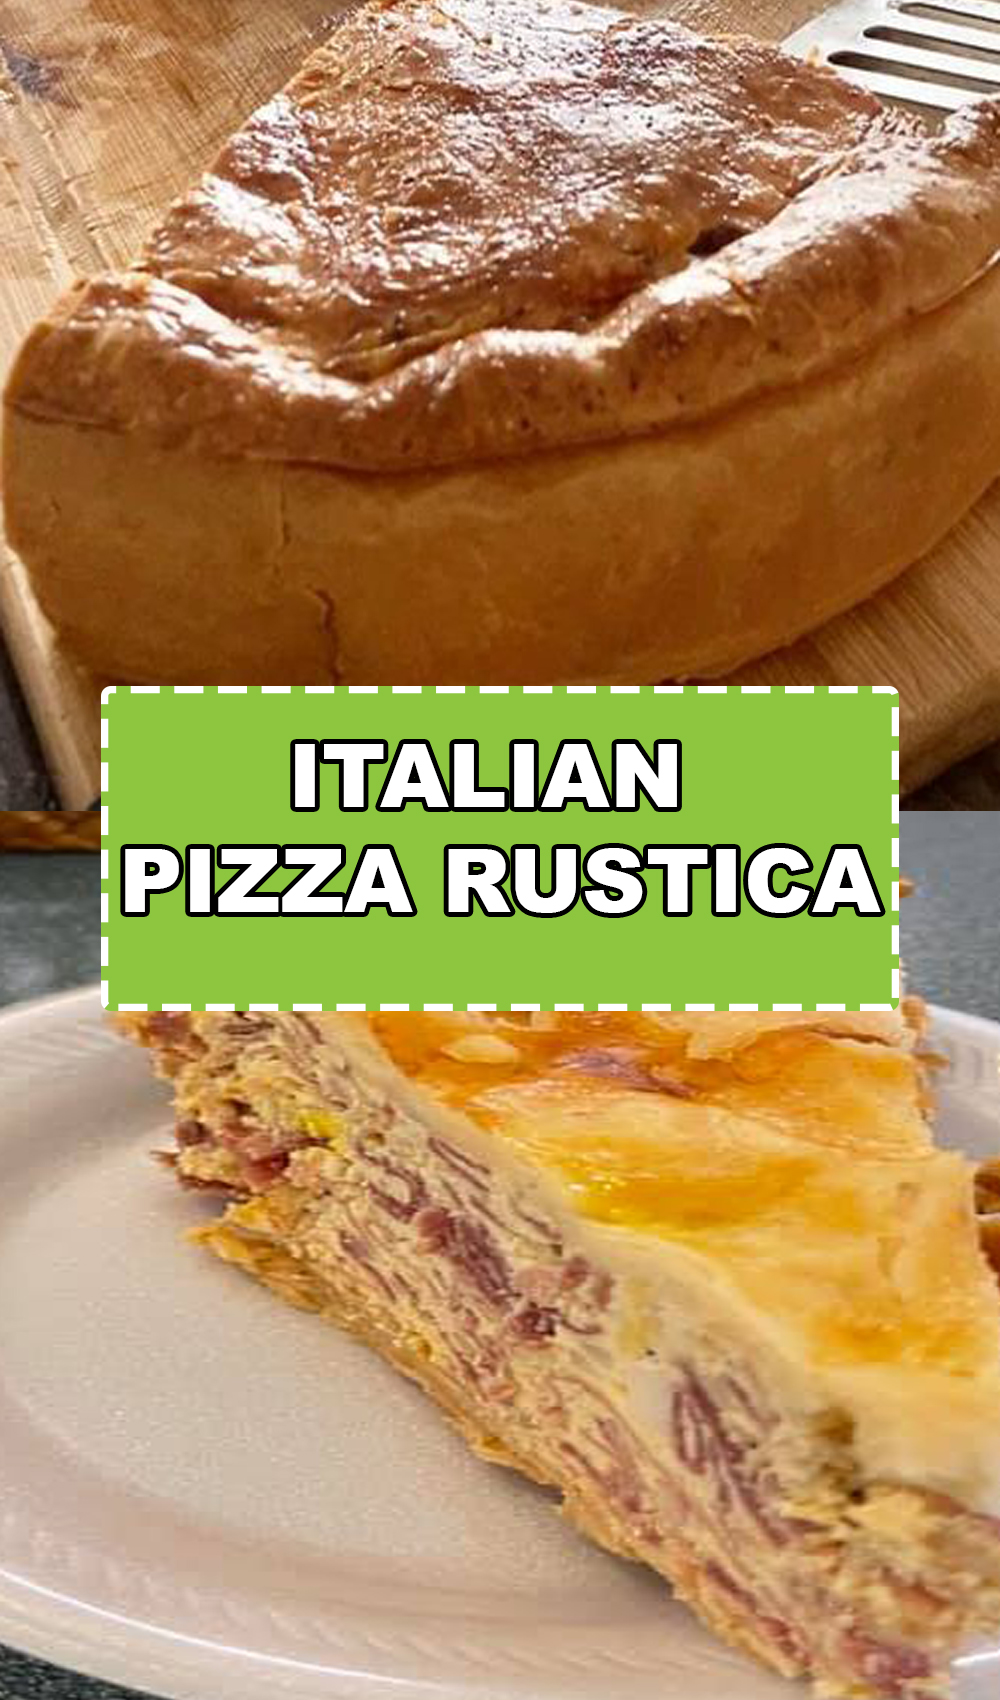 ITALIAN PIZZA RUSTICA